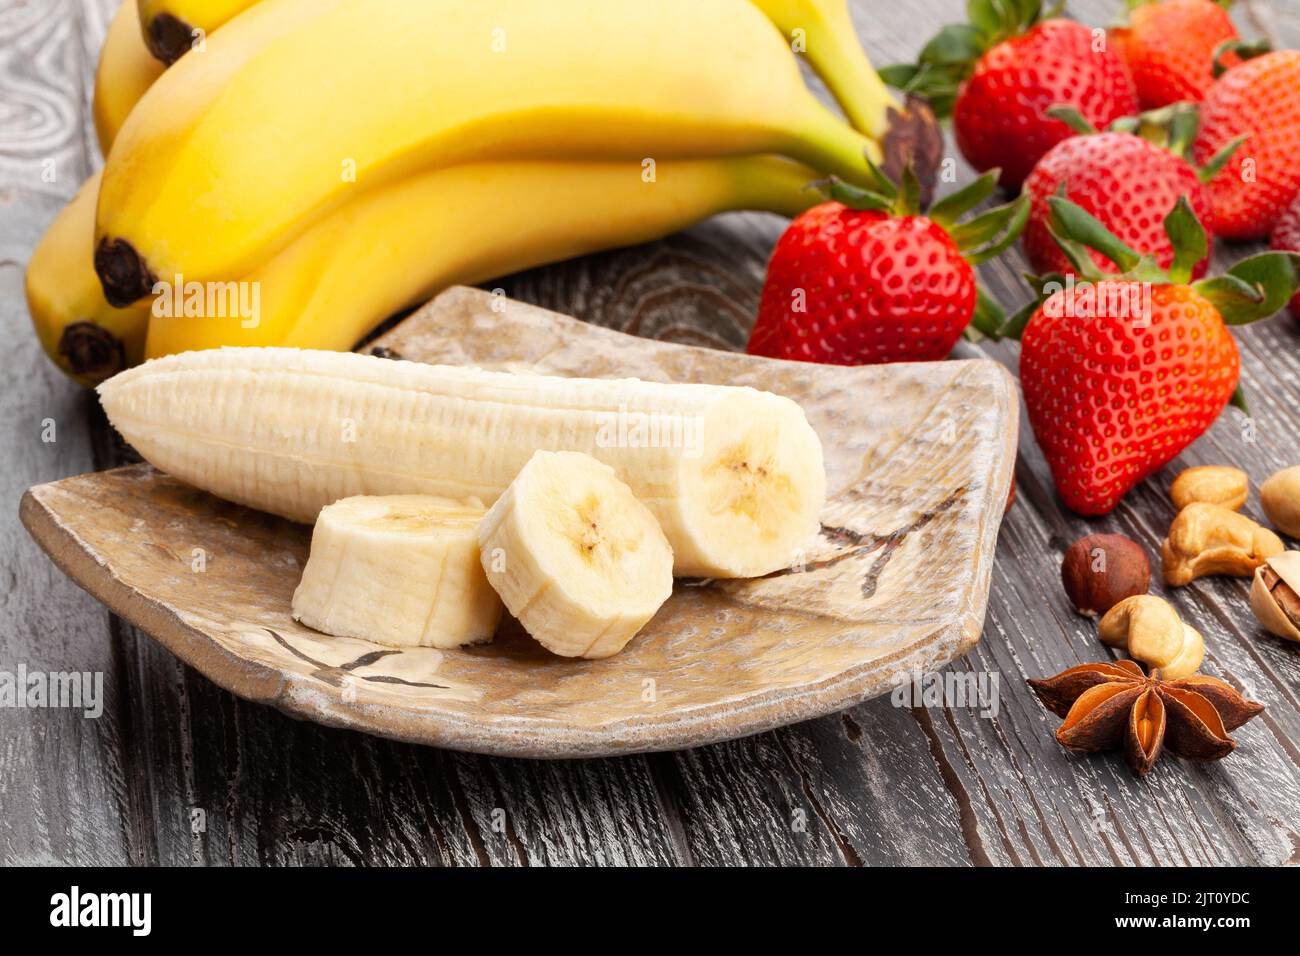 sliced banana on wood background Stock Photo